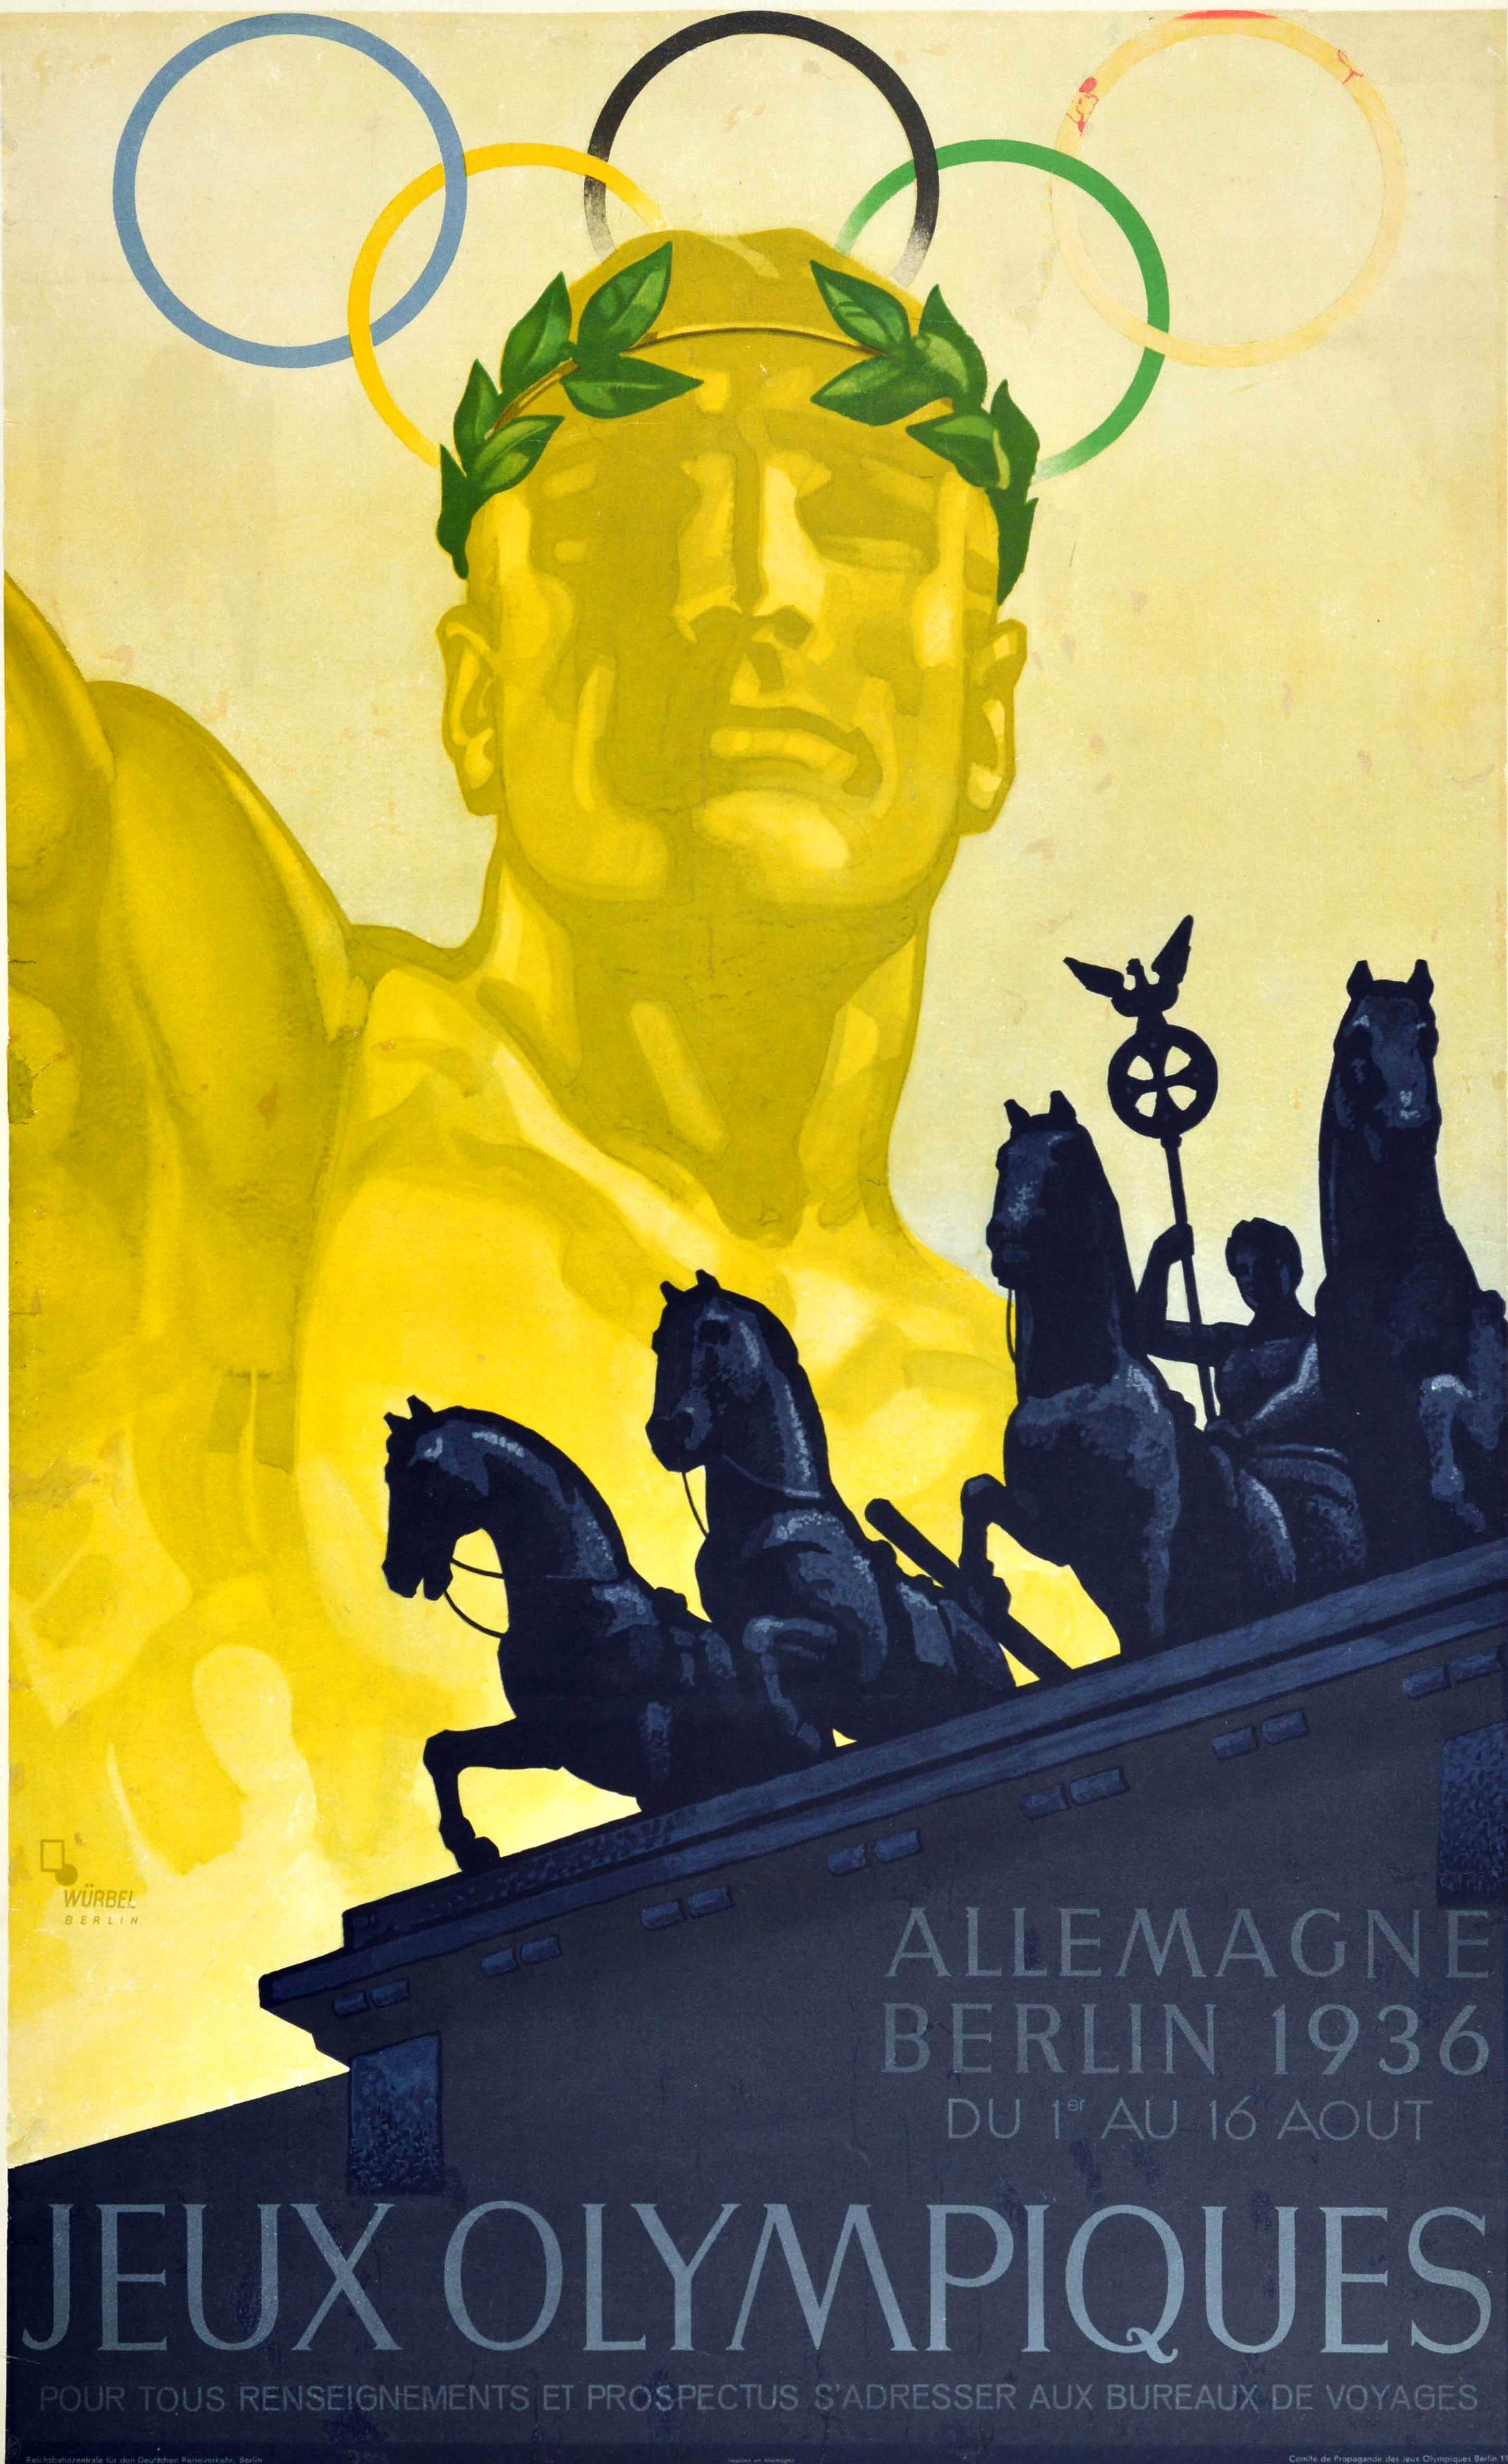 Franz Würbel Print - Original Vintage Sport Poster 1936 Olympic Games Berlin Germany Brandenburg Gate